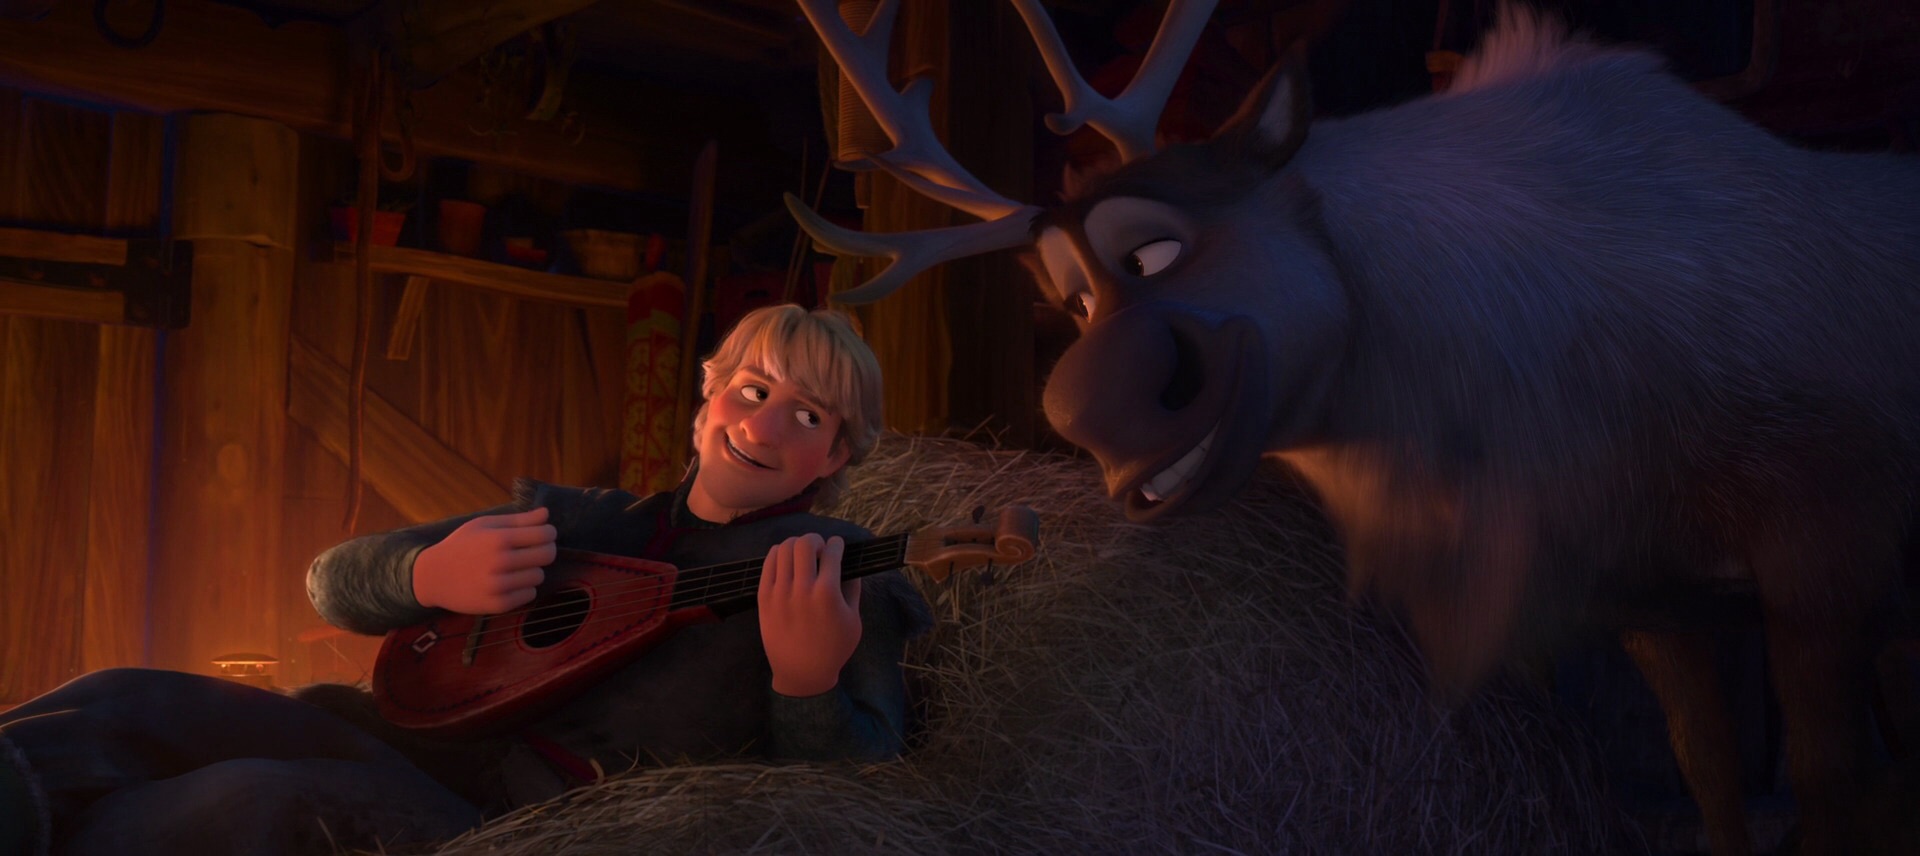 Frozen - Olaf vs. Sven (Funny Scene) 